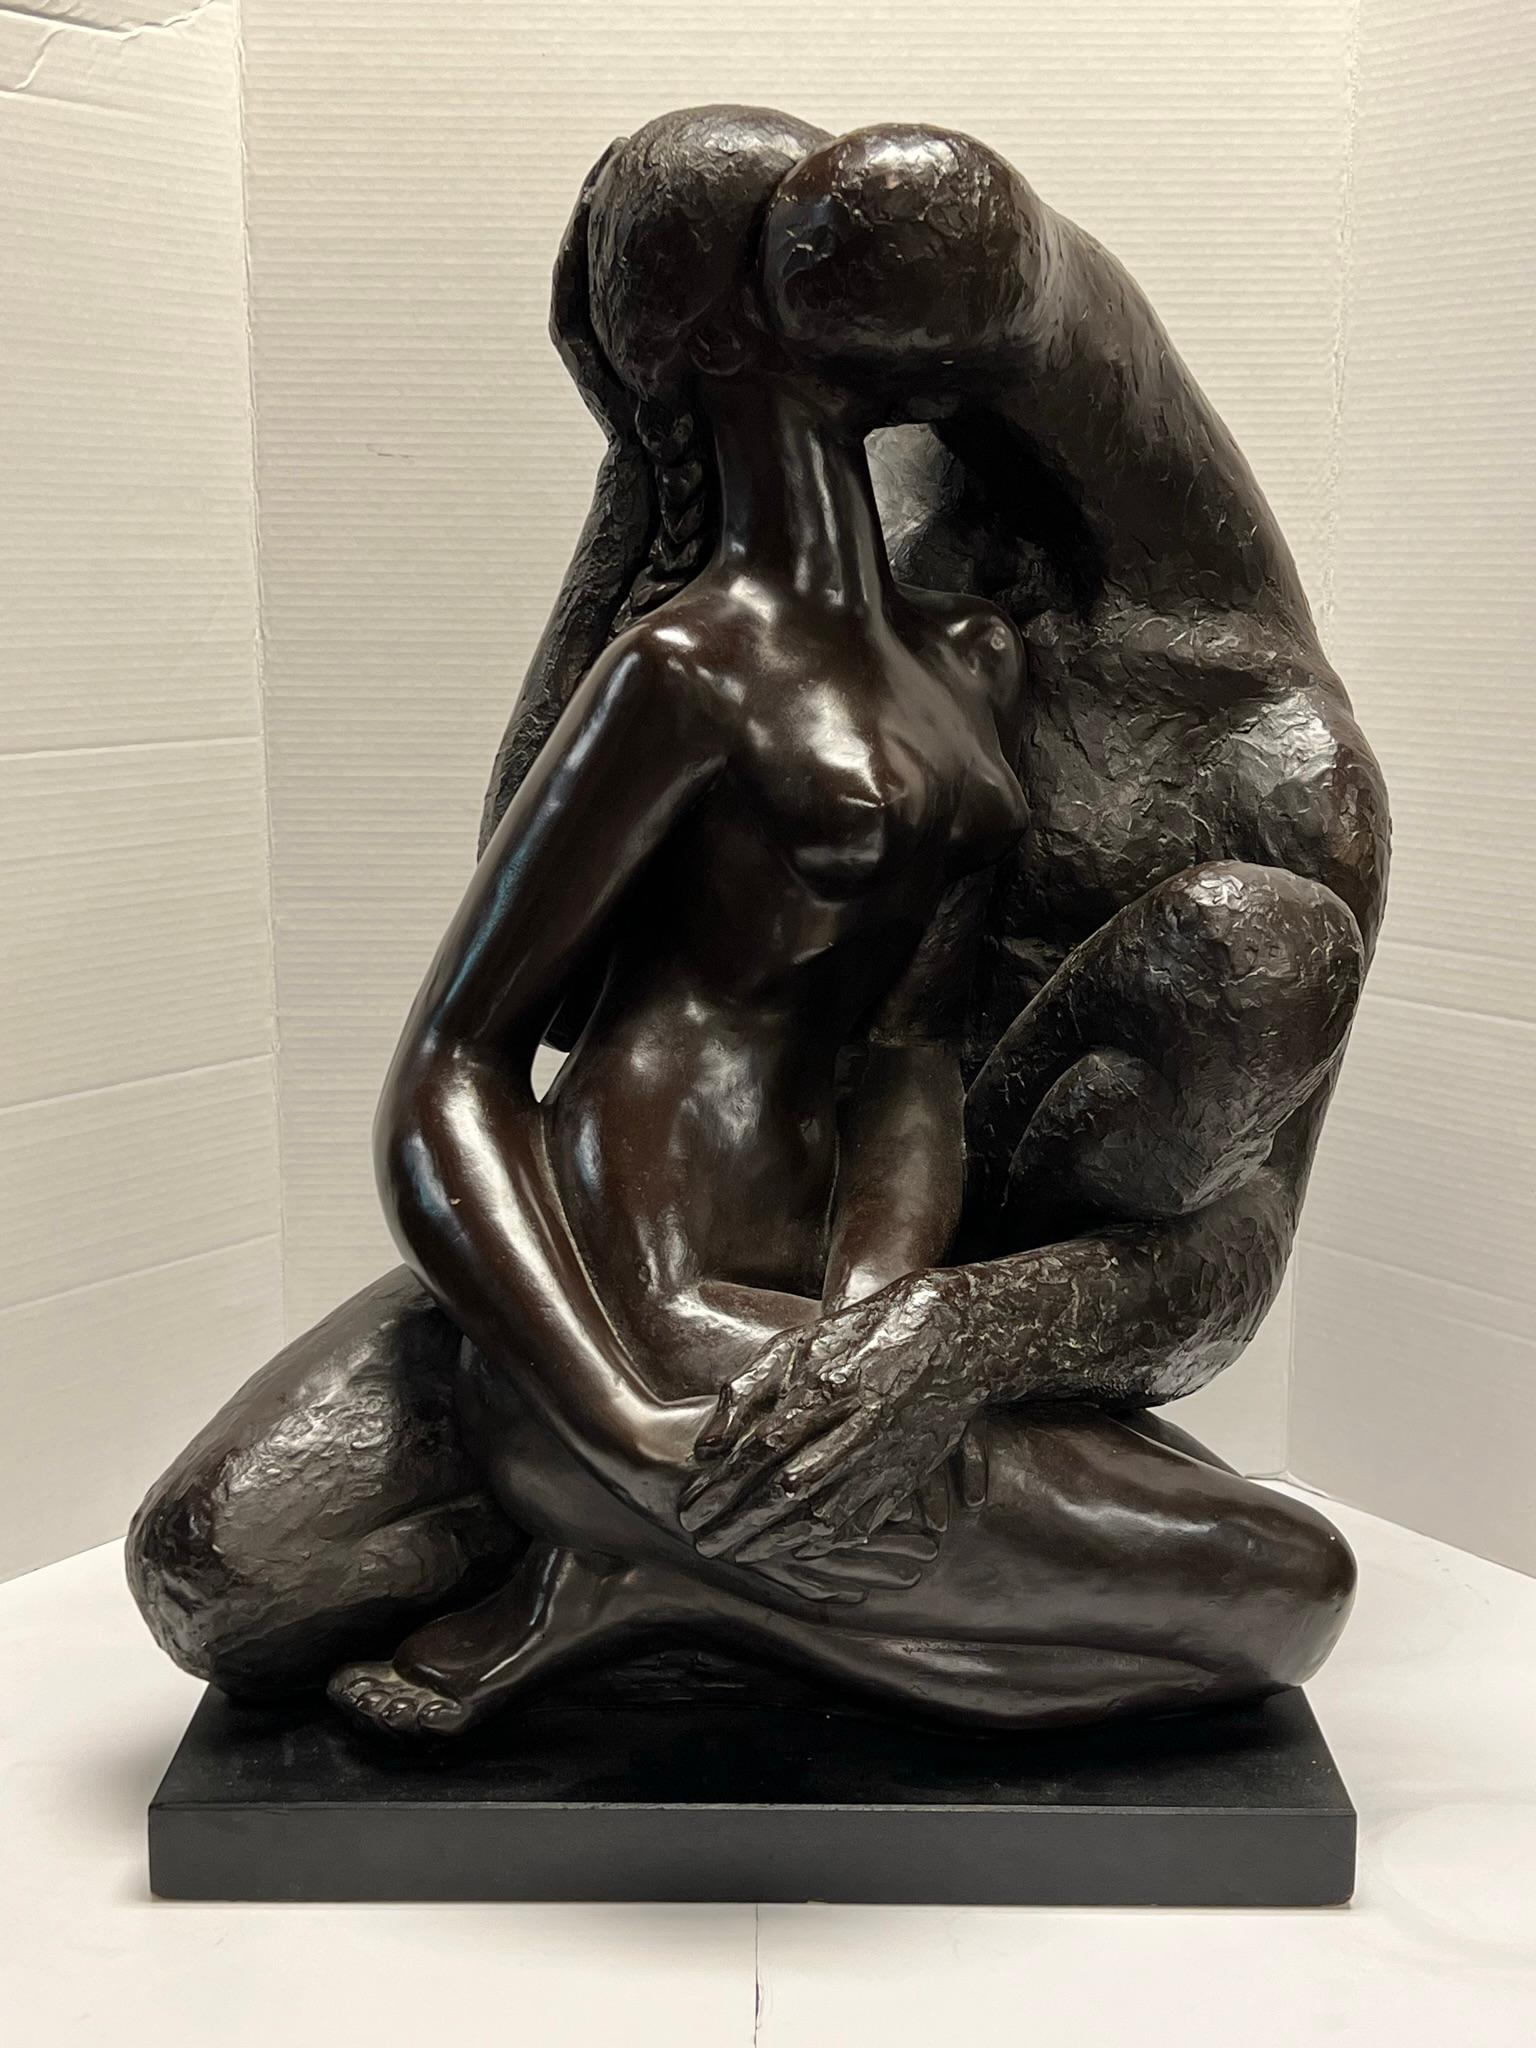 Bemalte Gipsskulptur im brutalistischen Stil des kubanischen Bildhauers Manuel Carbonell (1918-2011), die sitzende, umarmte Figuren eines grotesken und abstrakten Mannes darstellt, der eine schöne nackte Frau küsst.  Produziert von Austin